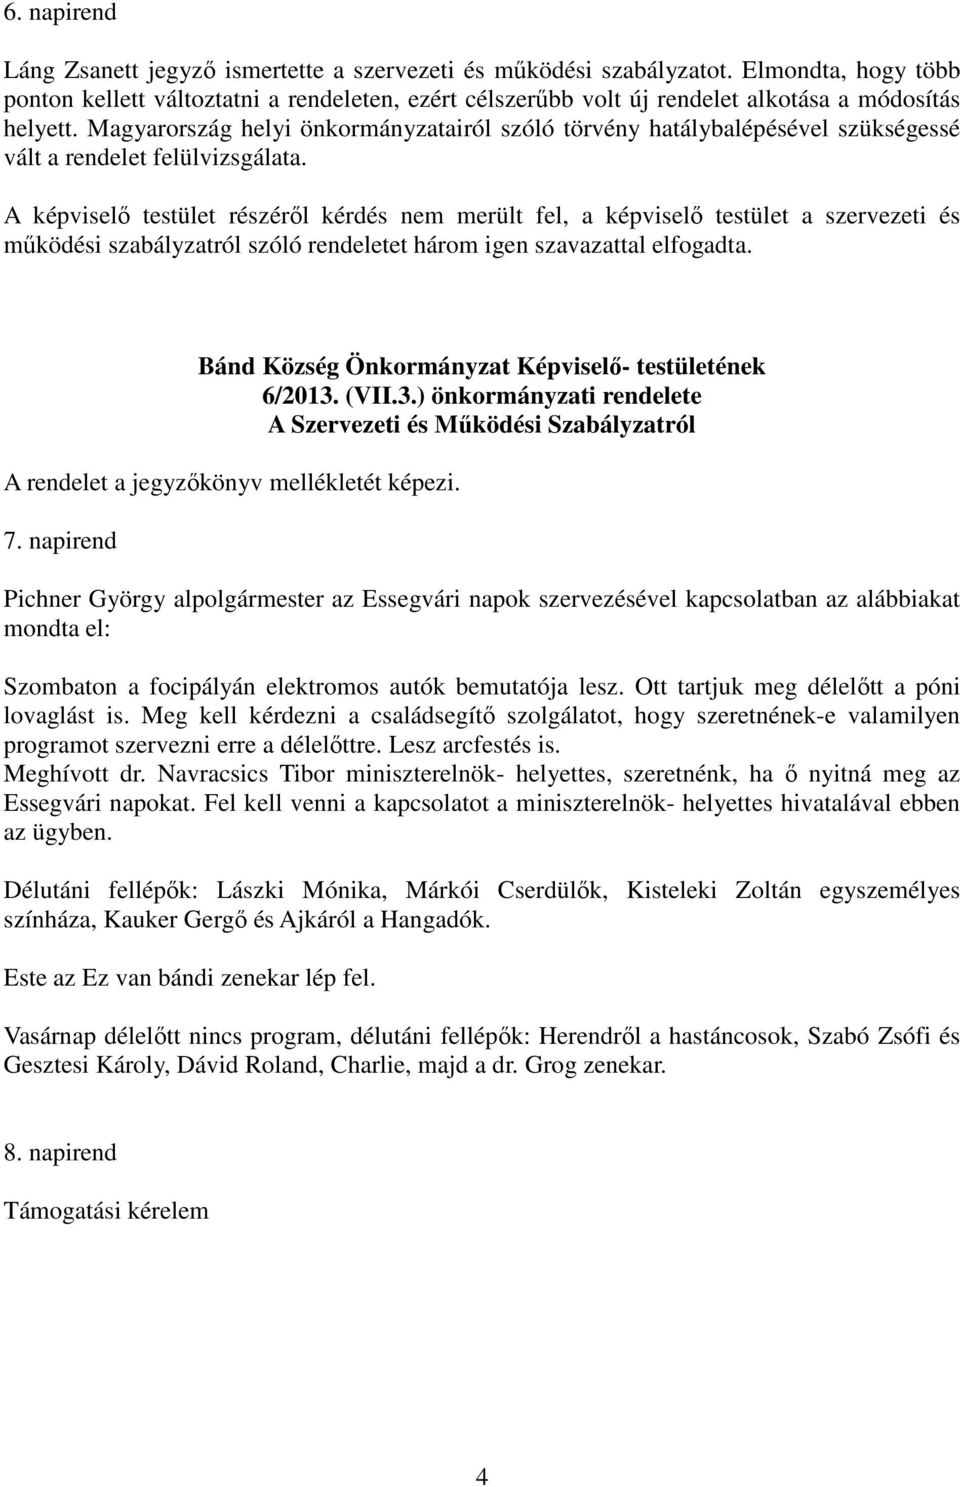 Magyarország helyi önkormányzatairól szóló törvény hatálybalépésével szükségessé vált a rendelet felülvizsgálata.